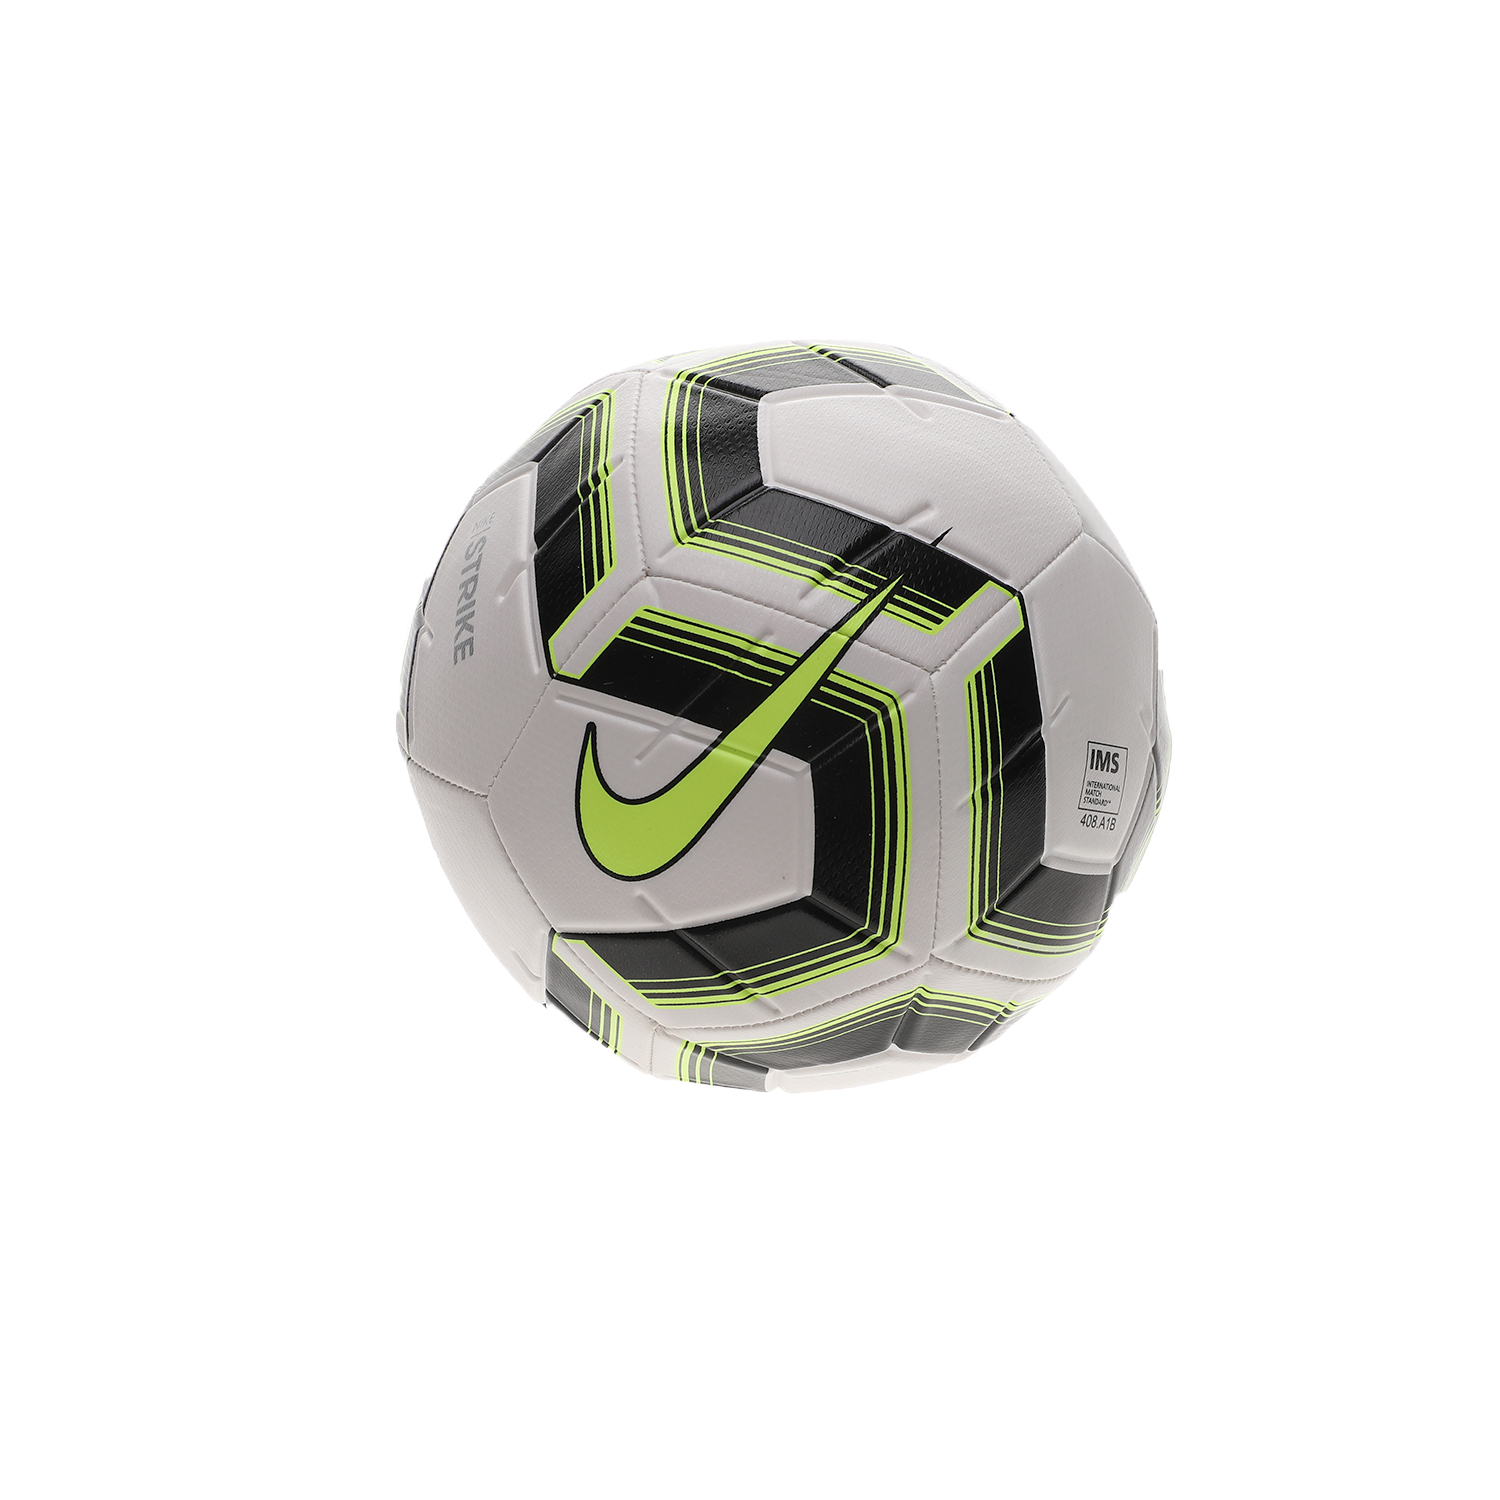 Ανδρικά/Αξεσουάρ/Αθλητικά Είδη/Μπάλες NIKE - Ποδοσφαιρική μπάλα NIKE STRK TEAM IMS λευκή μαύρη